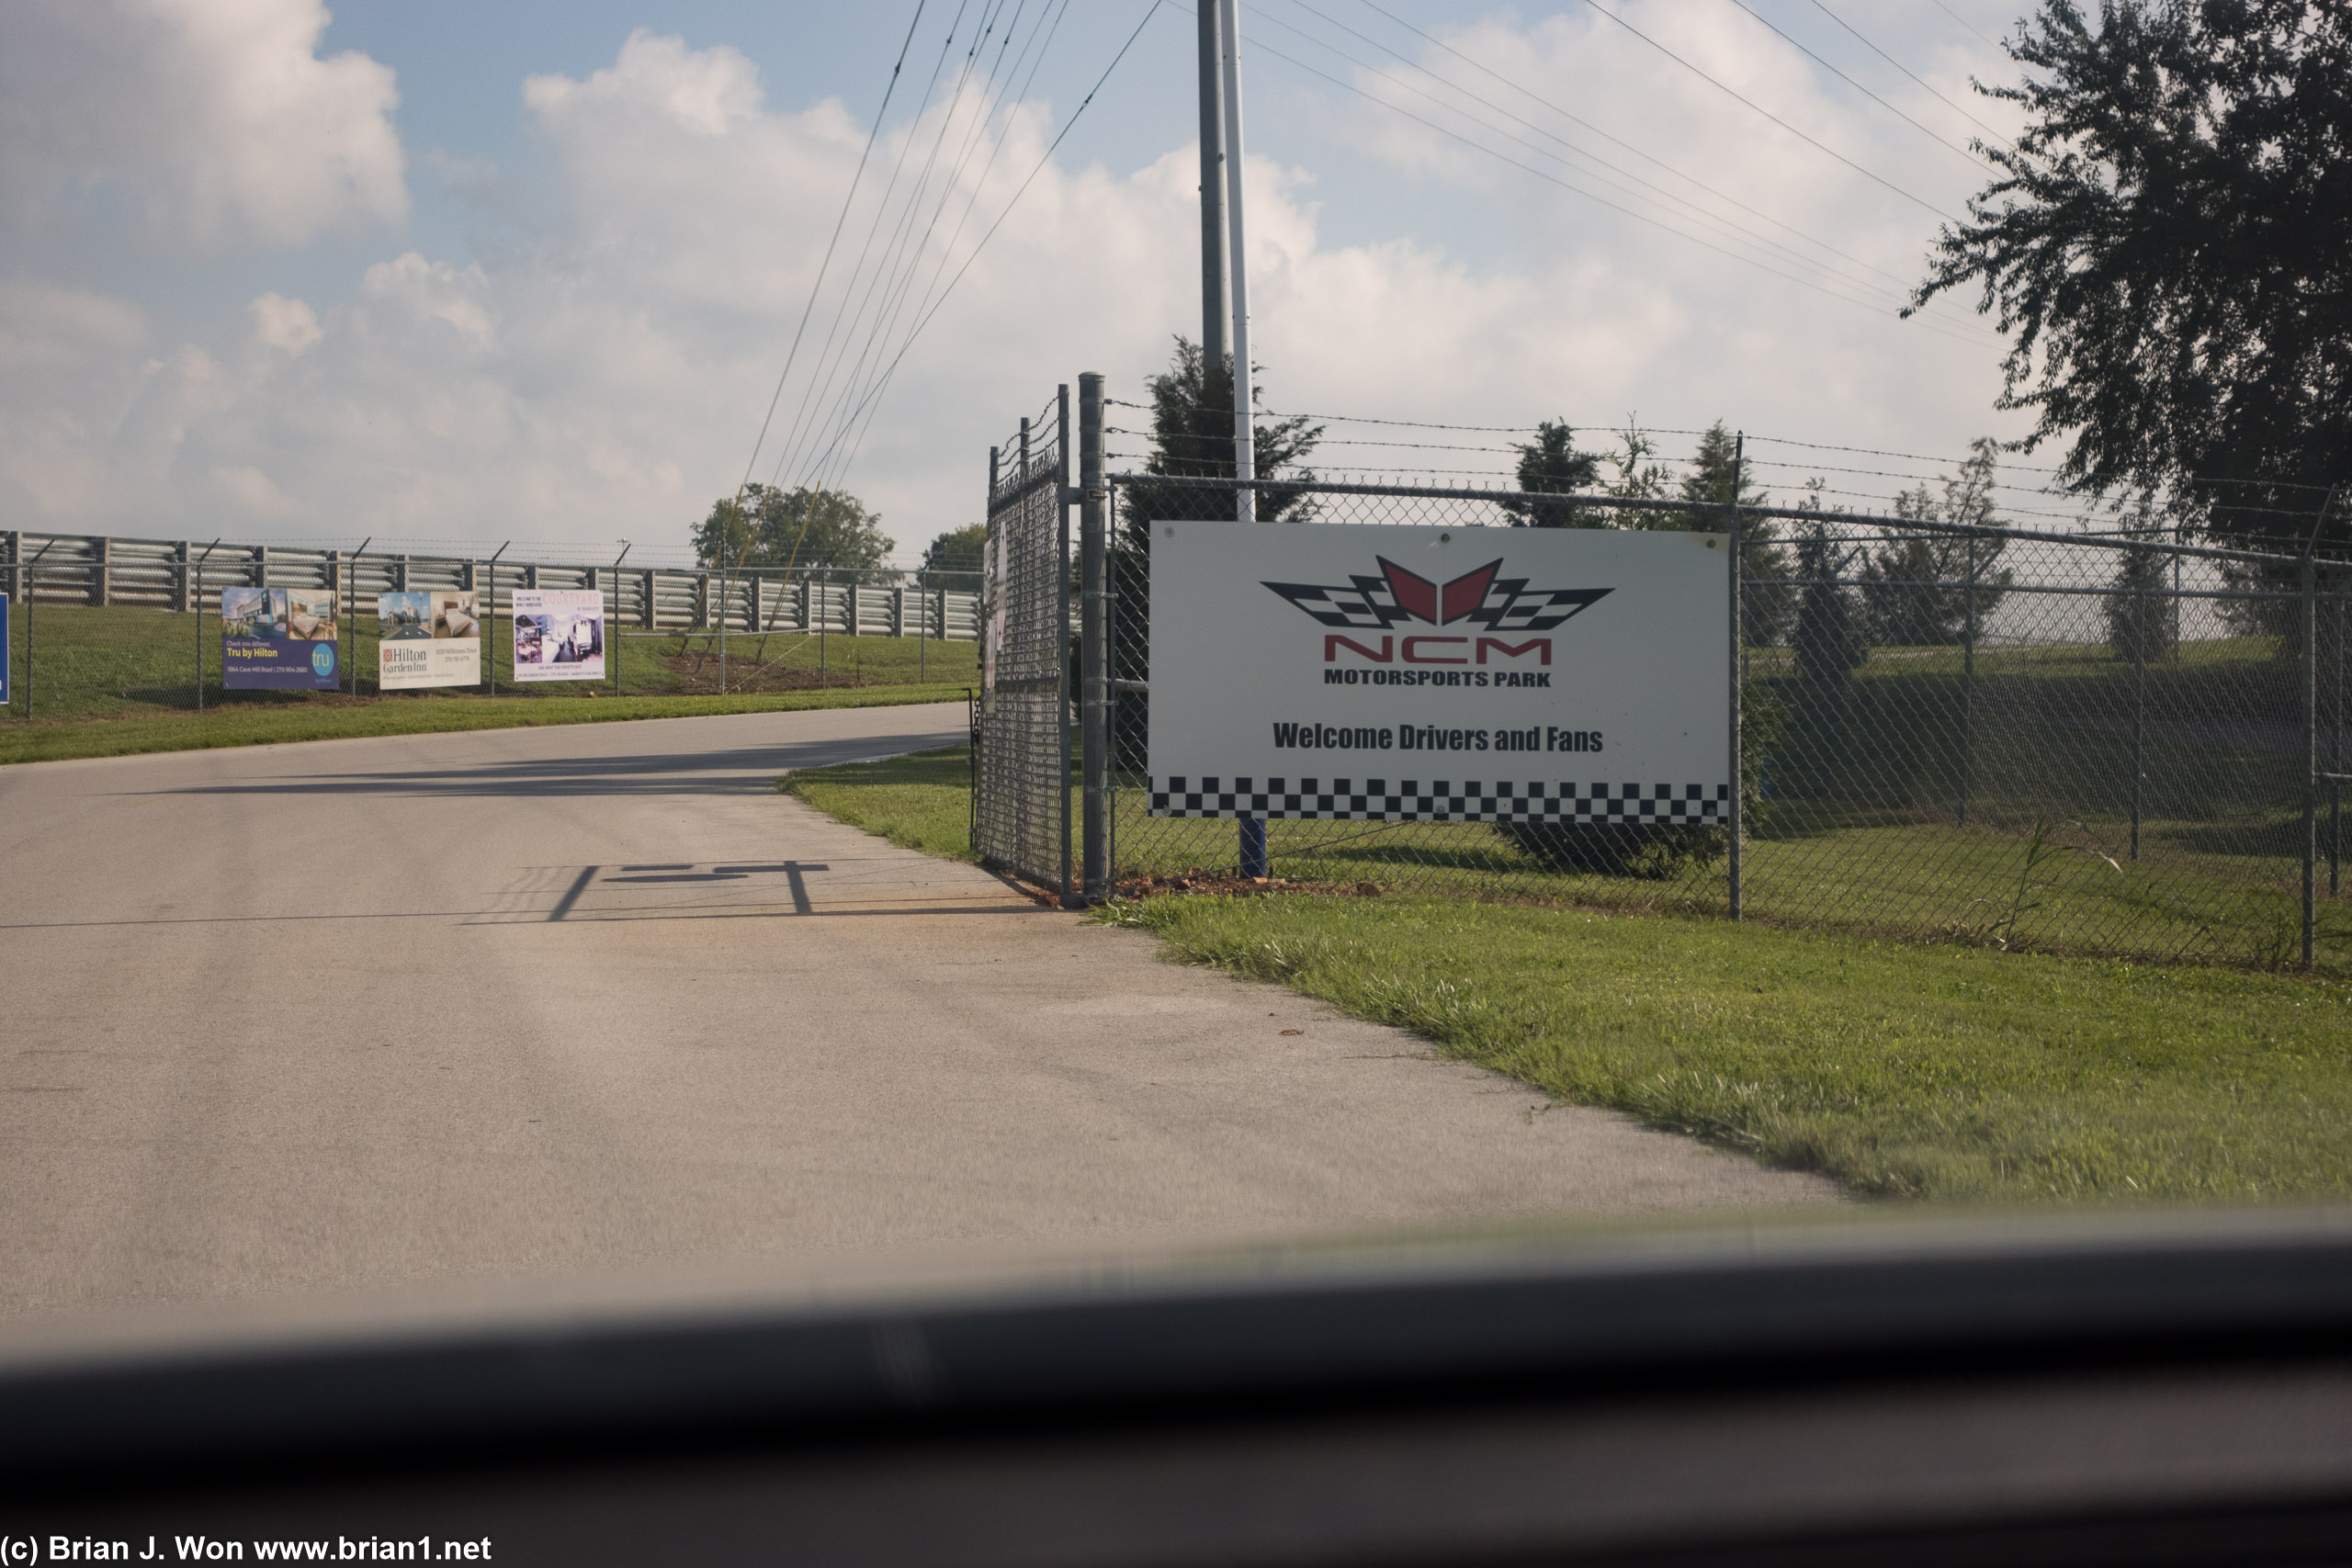 Arriving at NCM Motorsports Park.